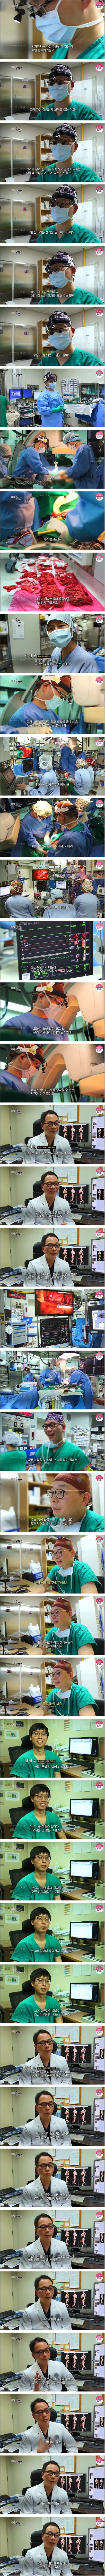 흉부외과의사가 말하는 '외과의사의 삶'